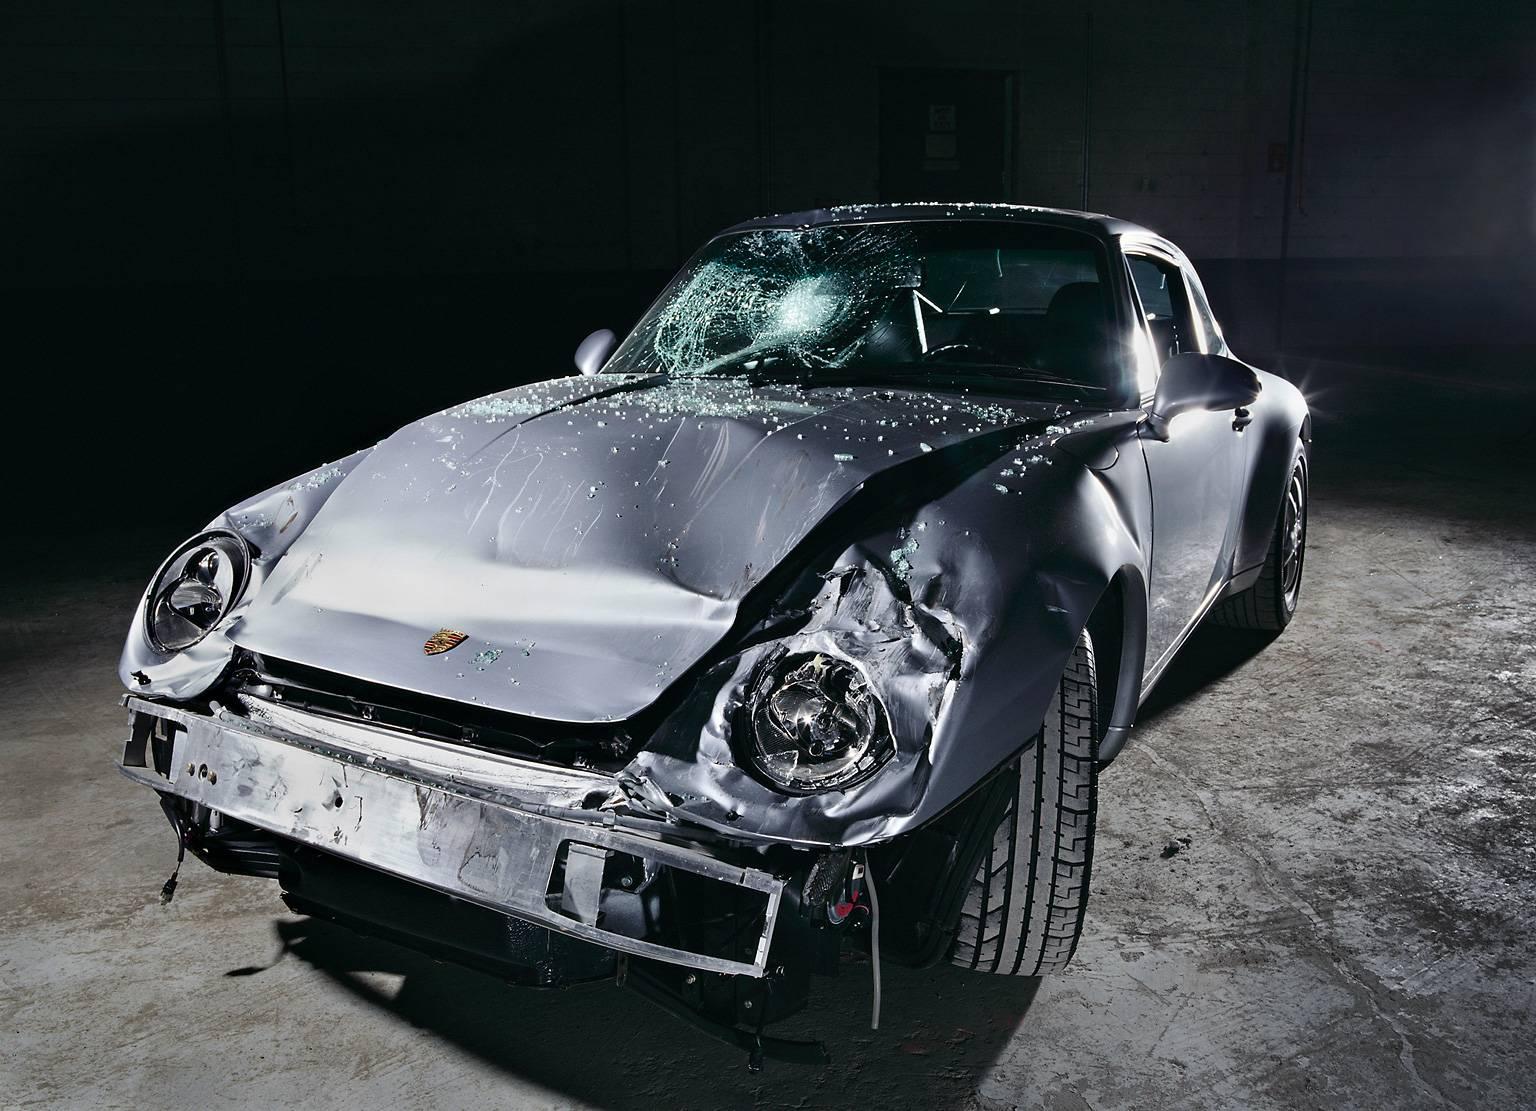 NINE-ONE-ONE-ONE ( Porsche 911) – gerahmtes, detailliertes Foto eines verunglückten Autos 